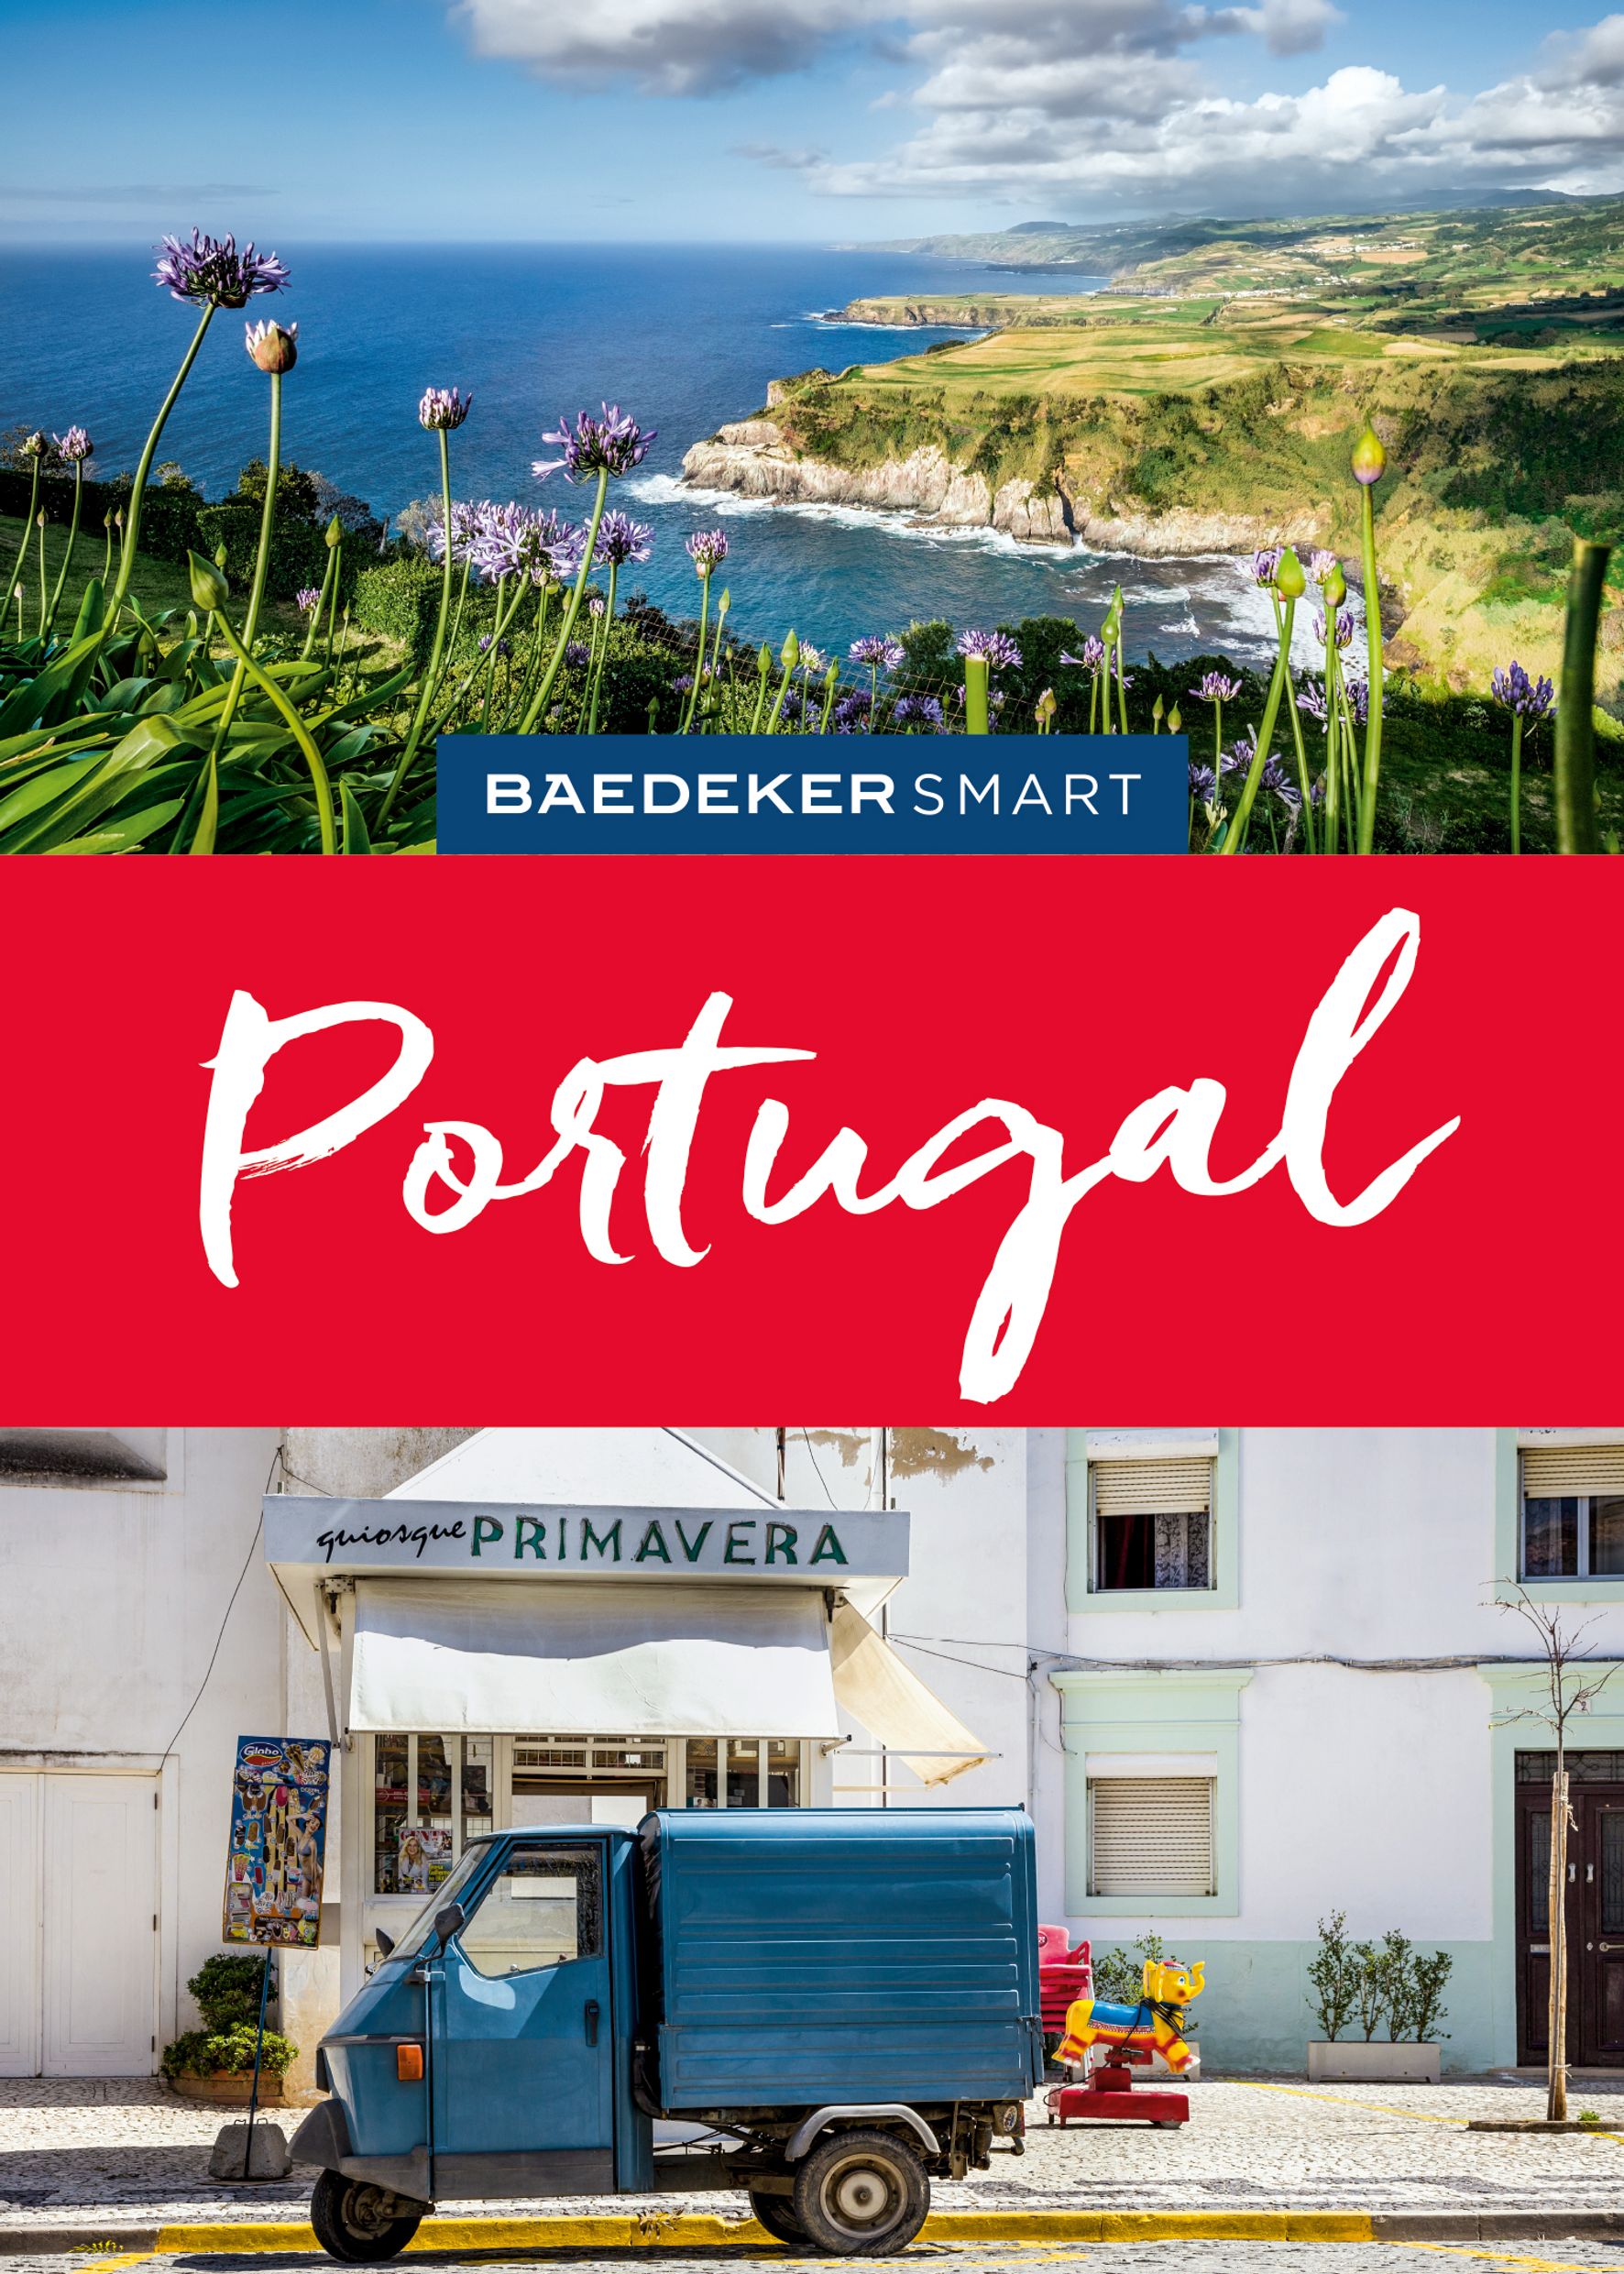 Baedeker Portugal (eBook)